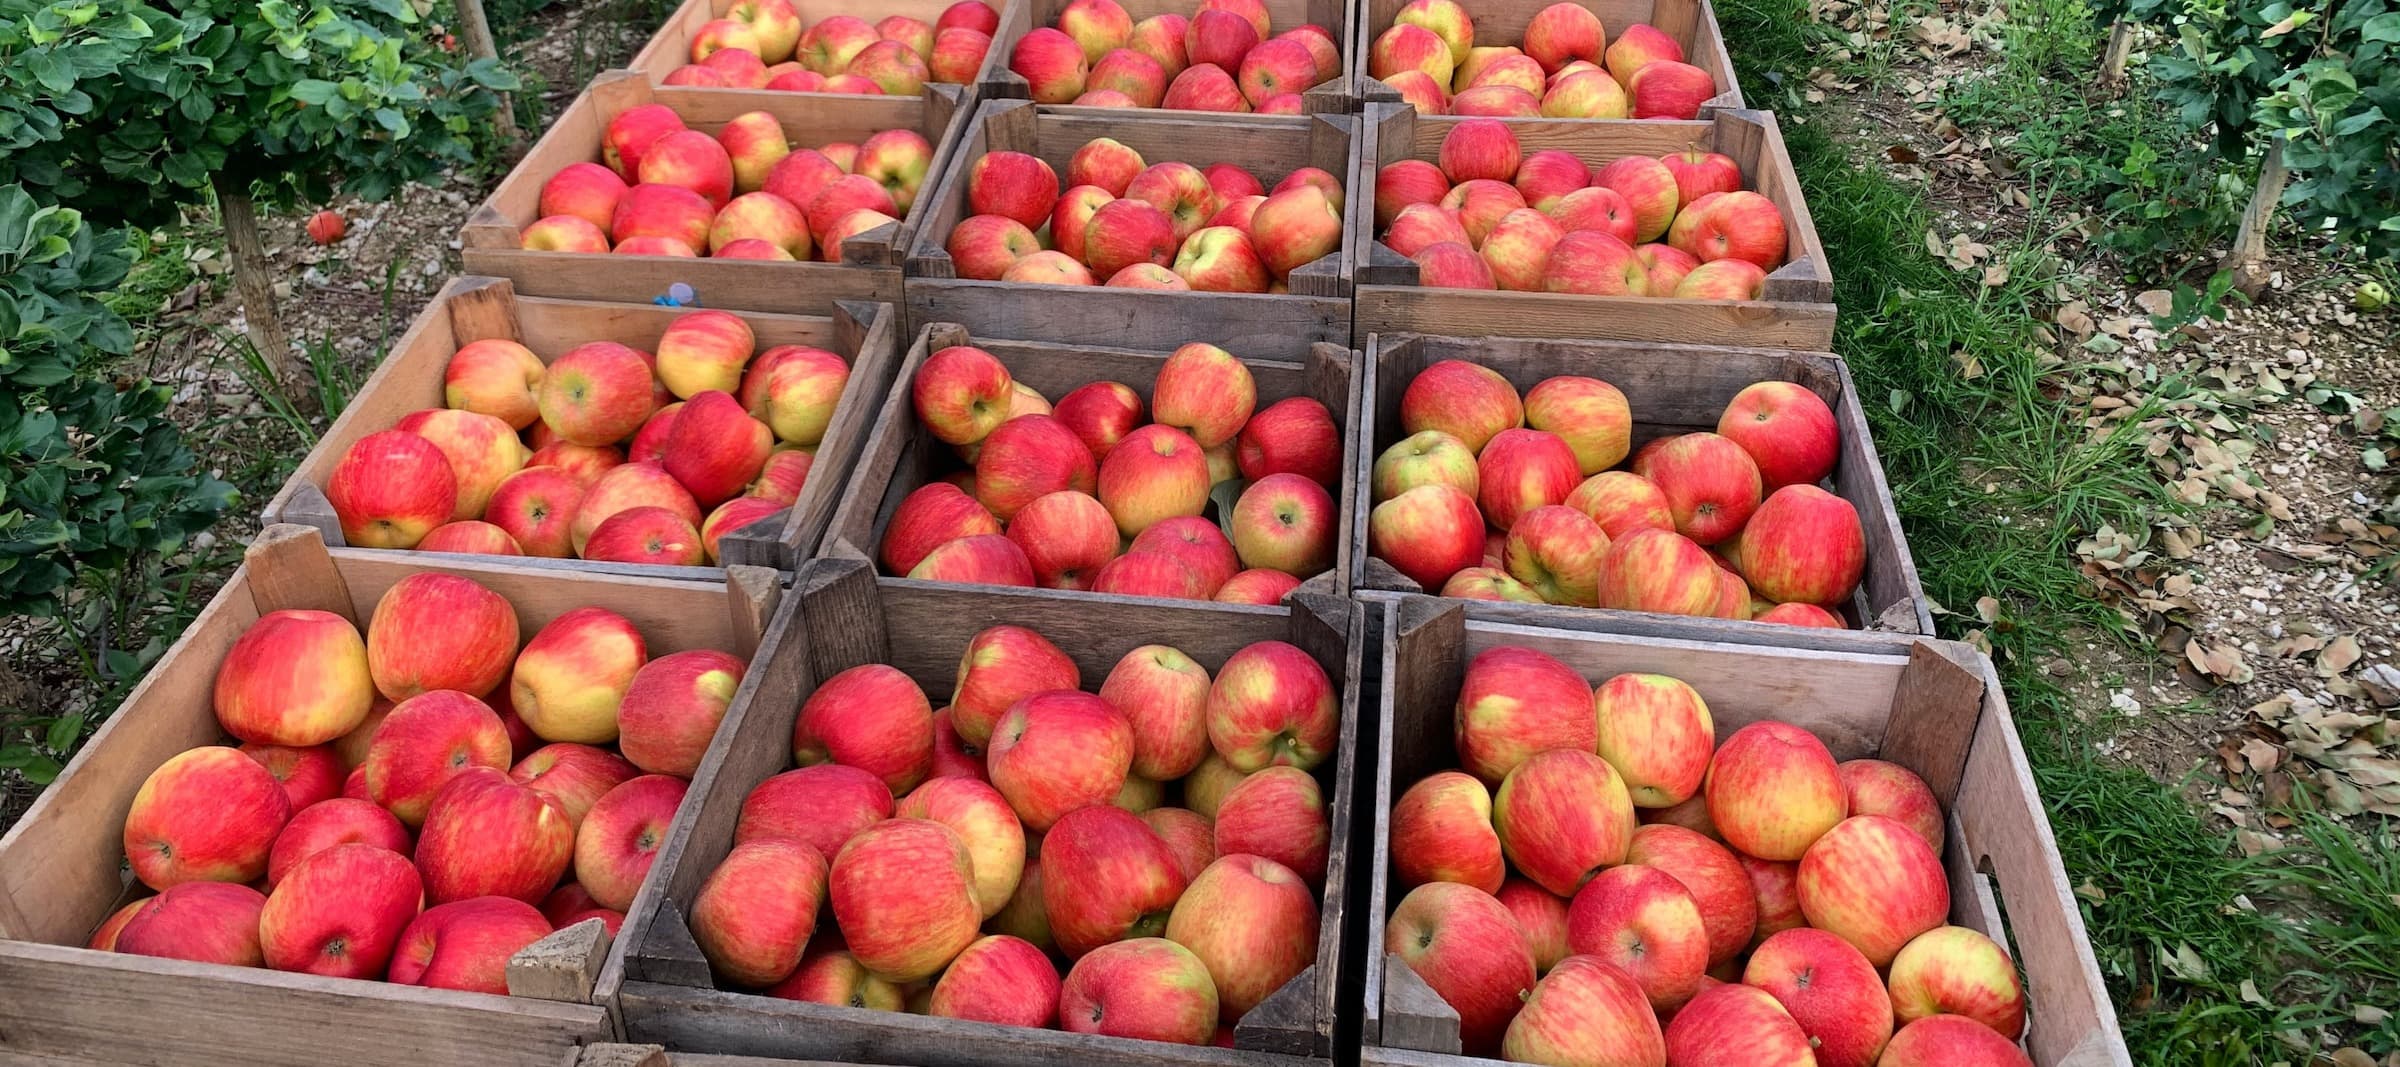 Фото новости: "Российские садоводы попросили ограничить ввоз яблок из Молдавии"